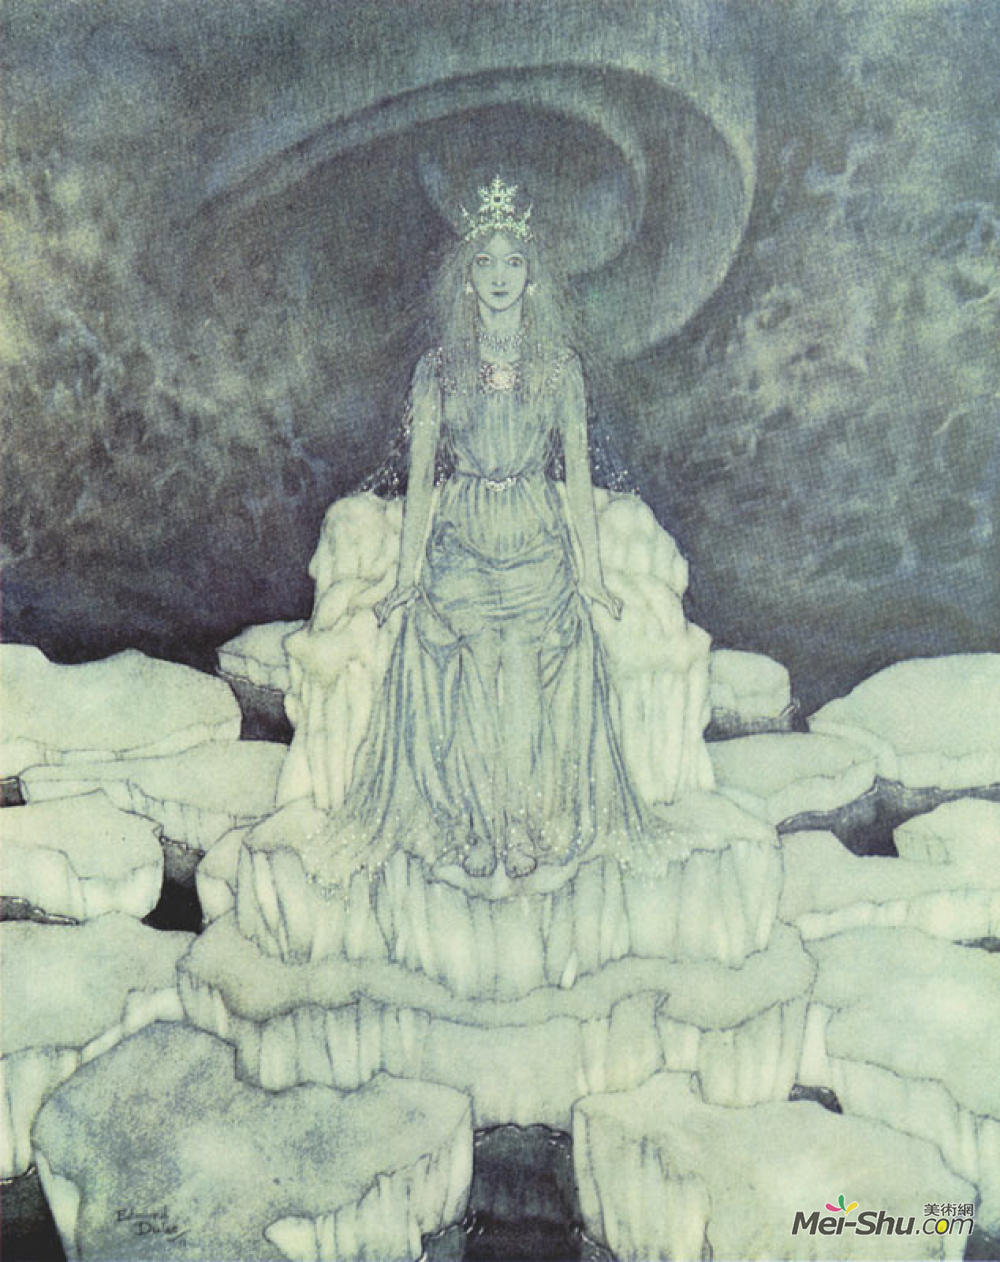 埃德蒙·杜拉克(Edmund Dulac)高清作品《冰雪宝座上的雪女王》